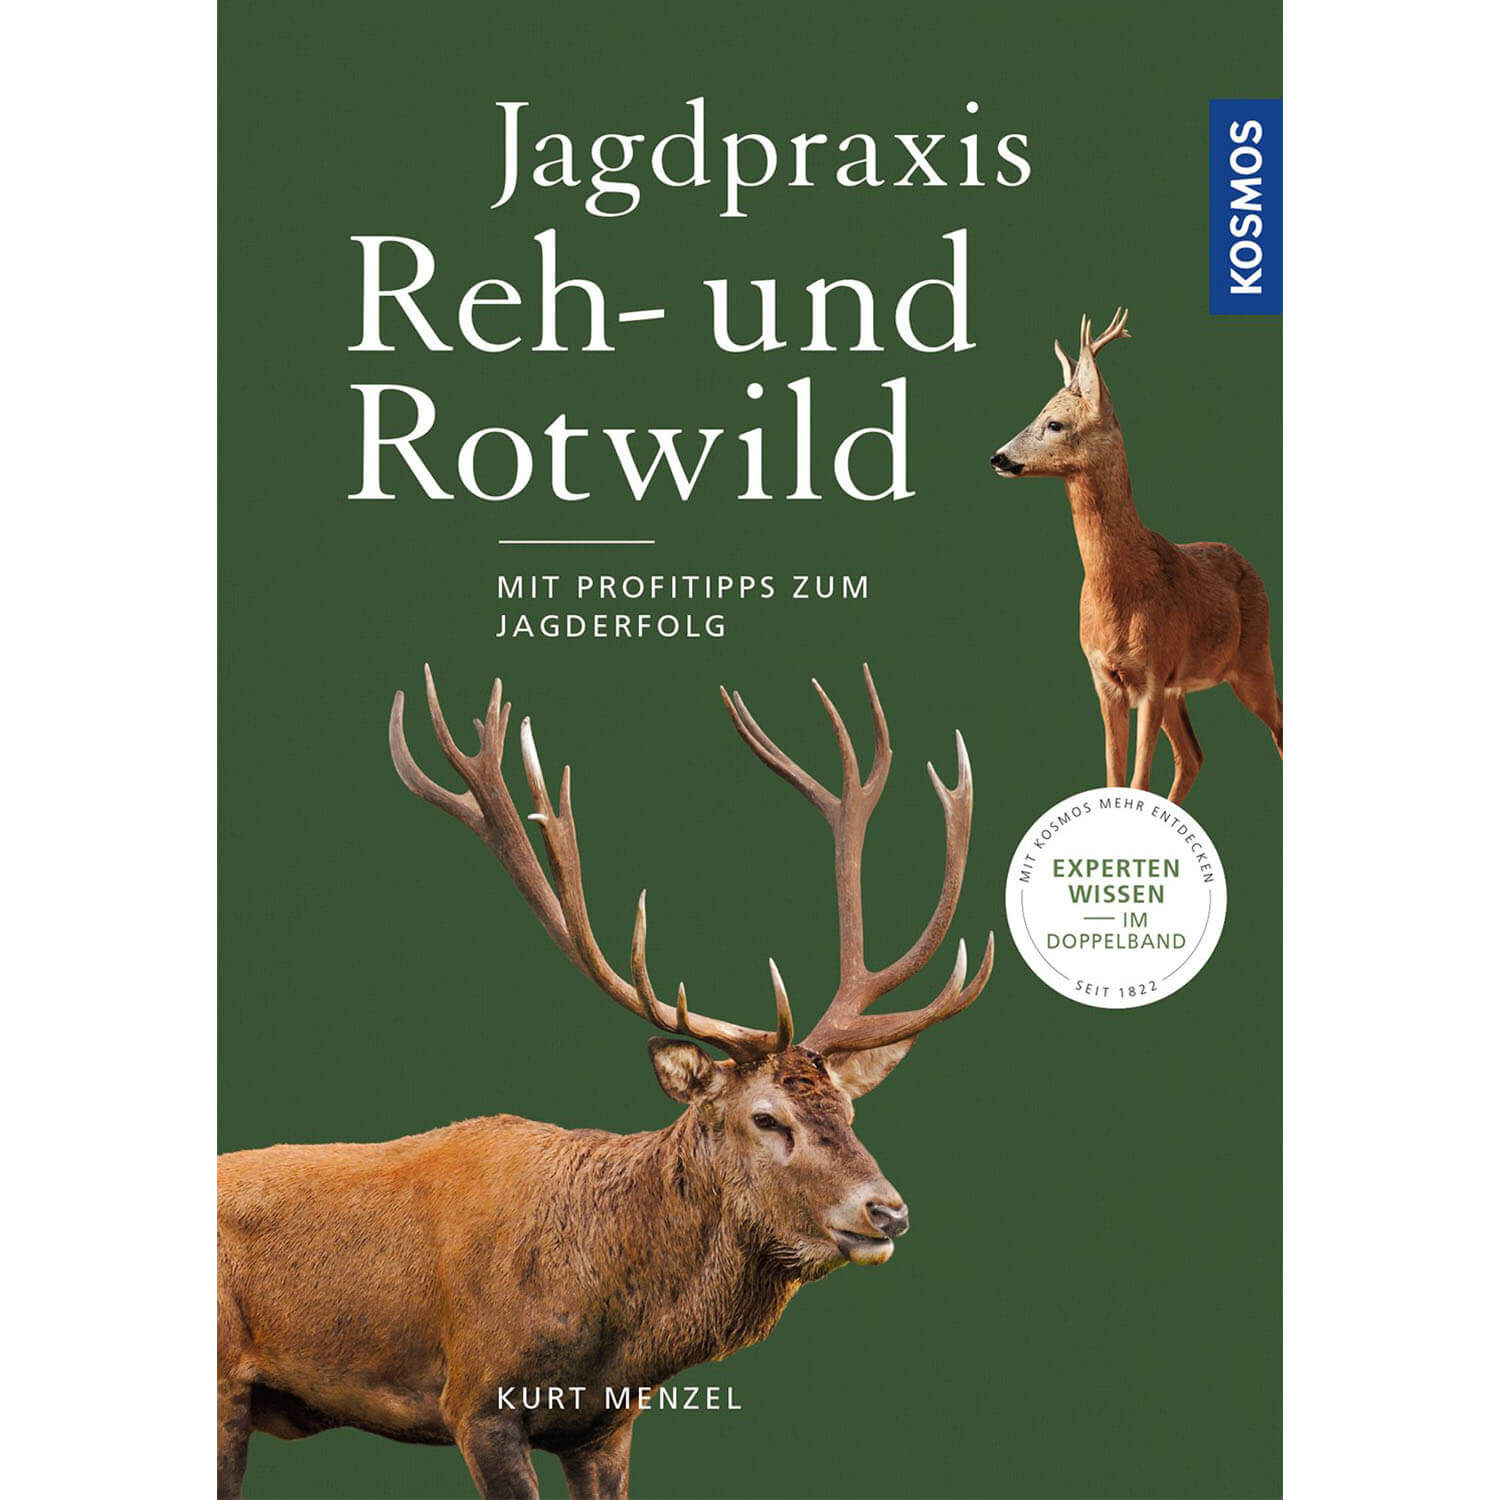 Jagdpraxis Reh- und Rotwild - Buch - Kurt Menzel - Jagdbücher